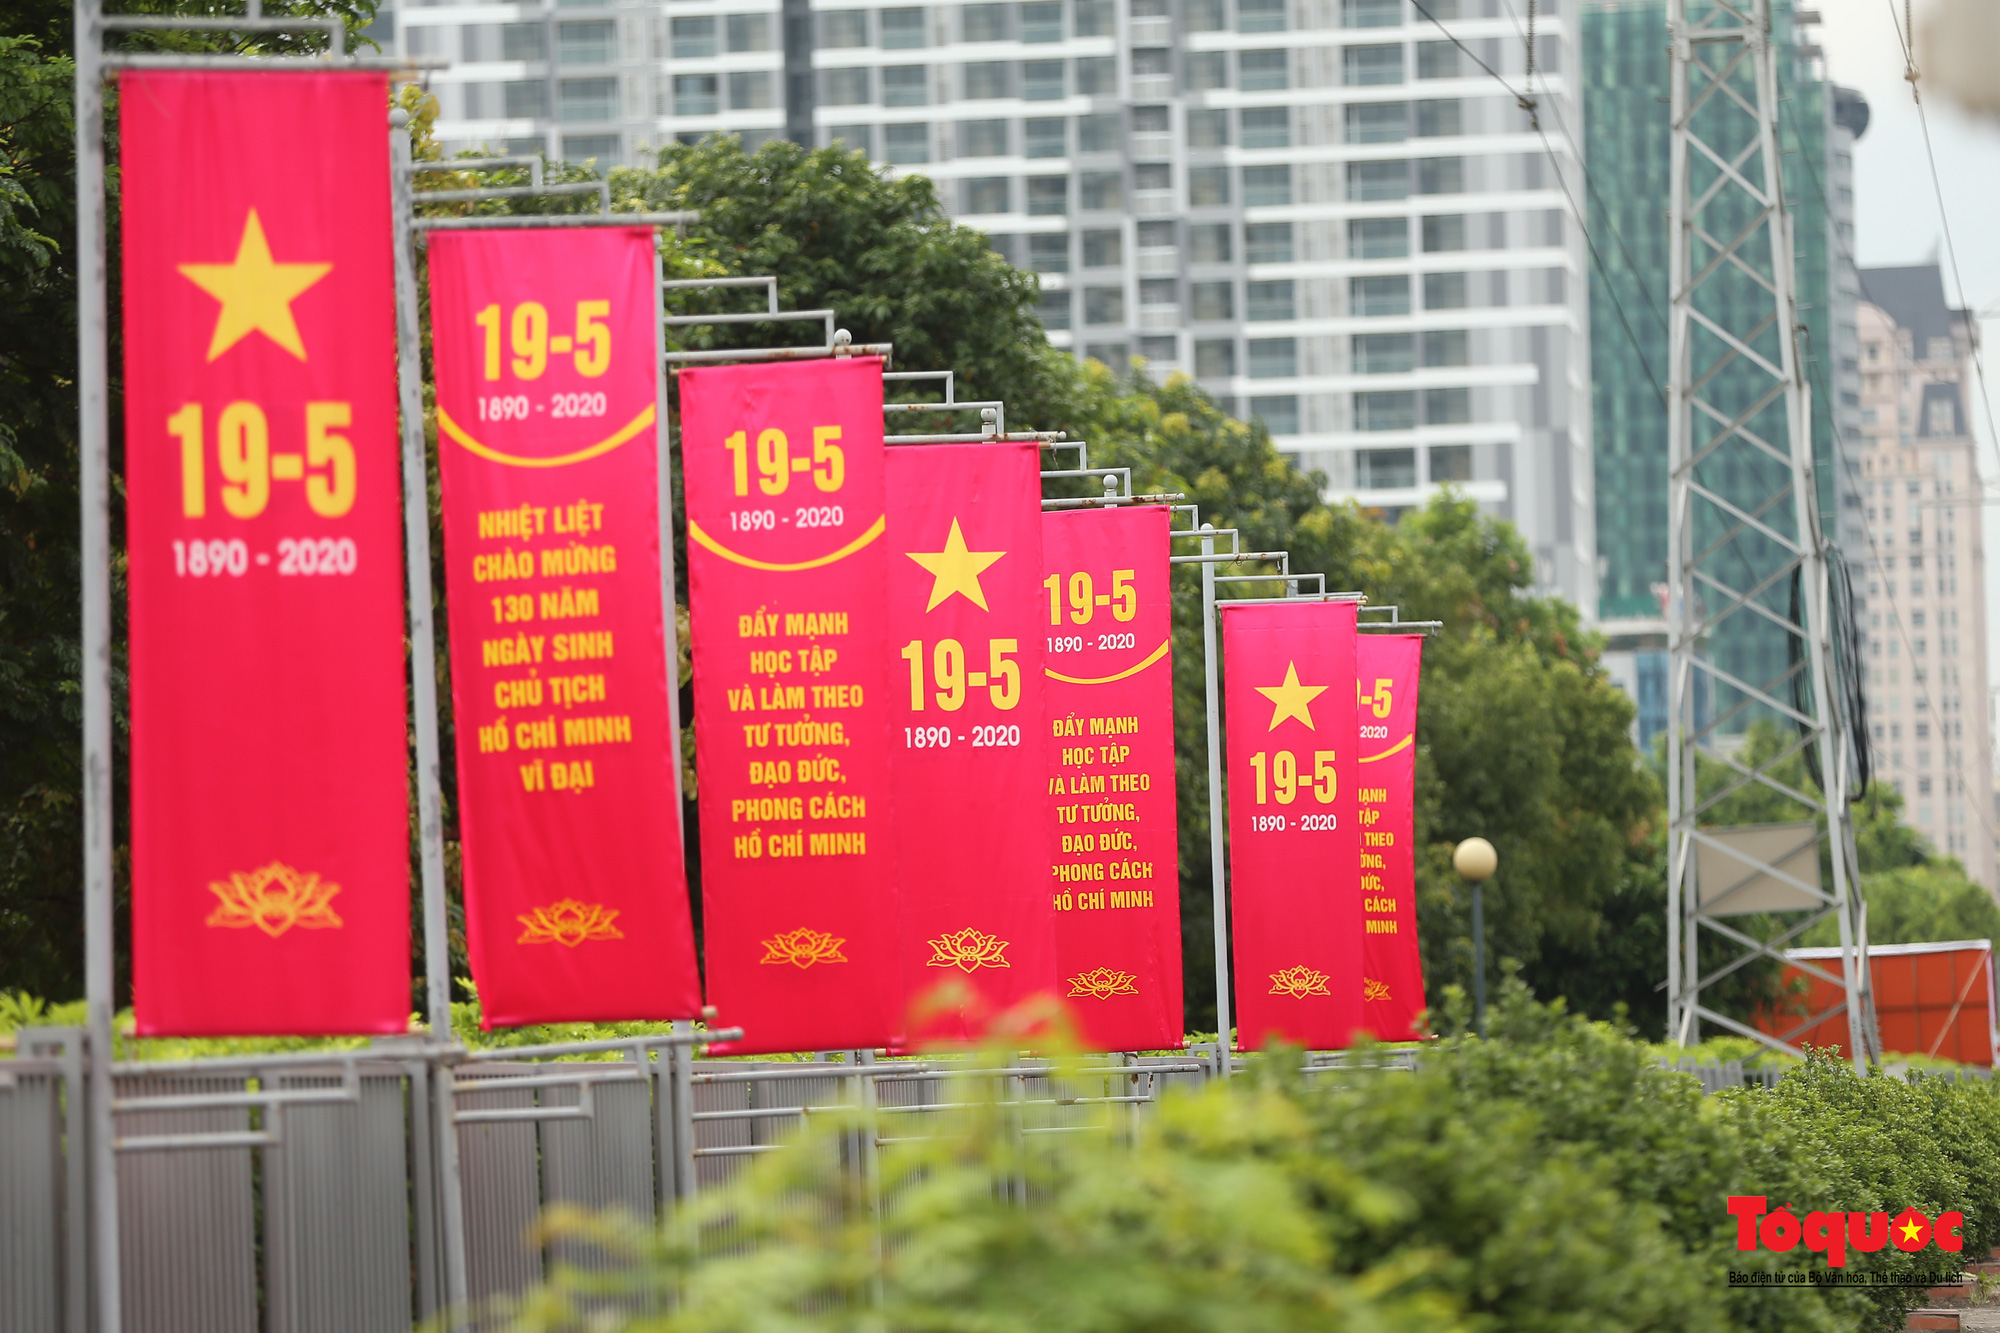 Hà Nội trang hoàng rực rỡ kỷ niệm 130 năm Ngày sinh Chủ tịch Hồ Chí Minh - Ảnh 5.